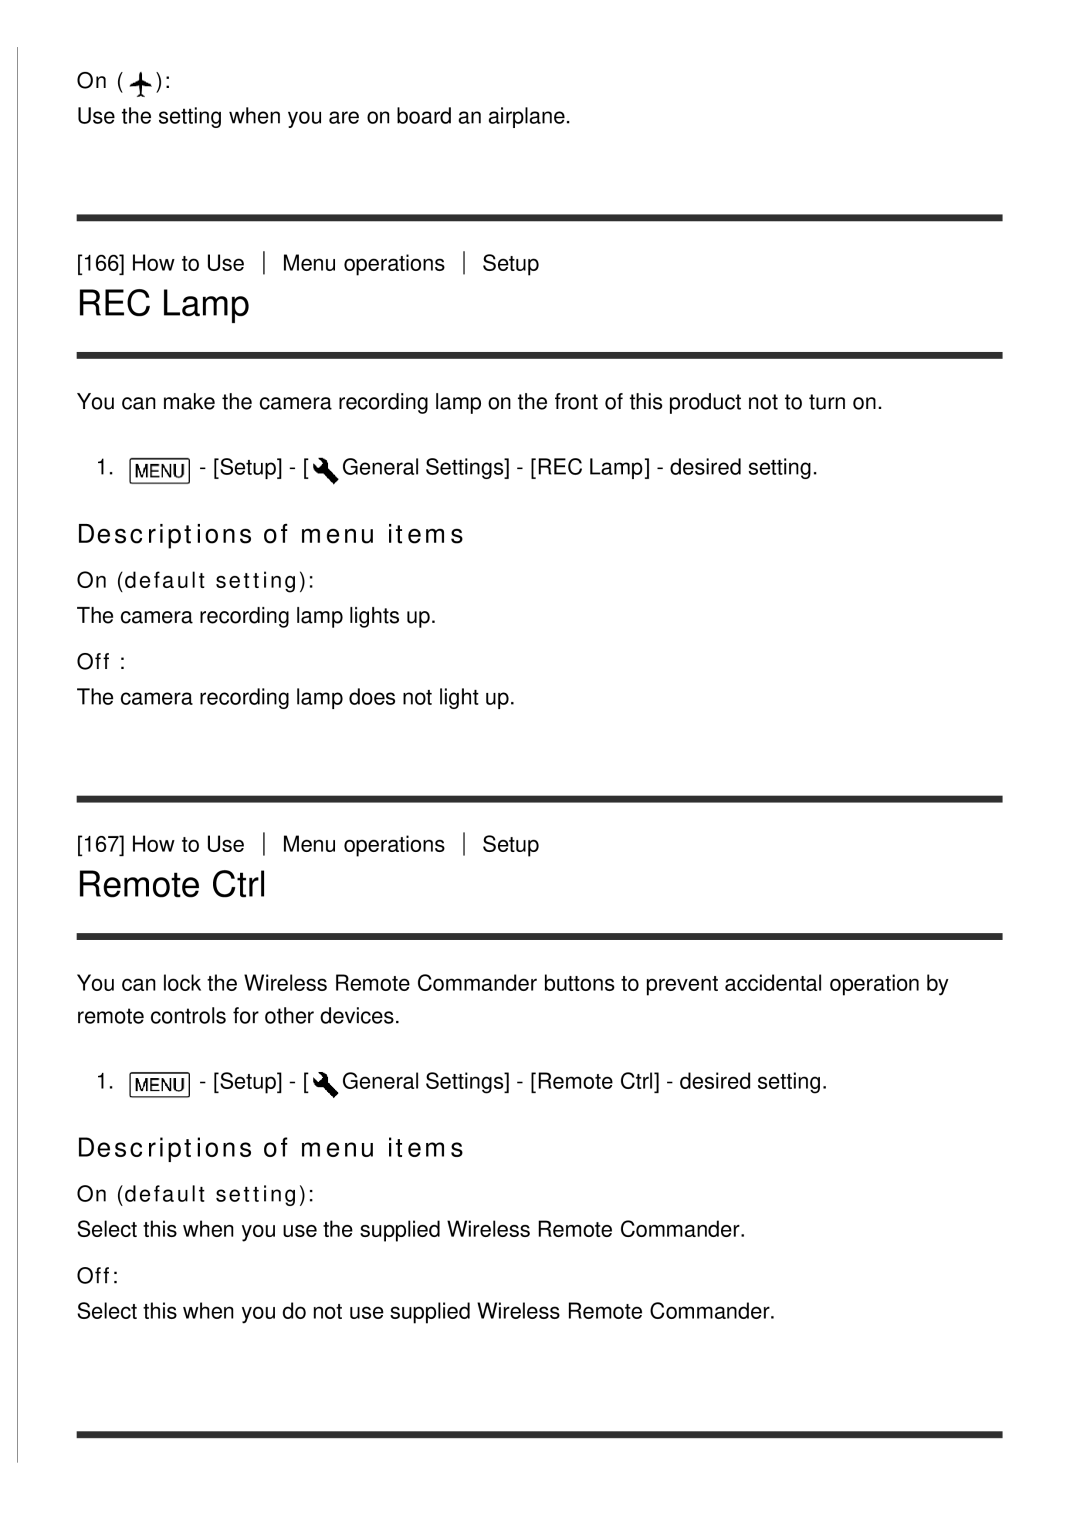 Sony FDR-AX100E, HDR-CX900E manual REC Lamp, Remote Ctrl, Descriptions of menu items, On default setting 